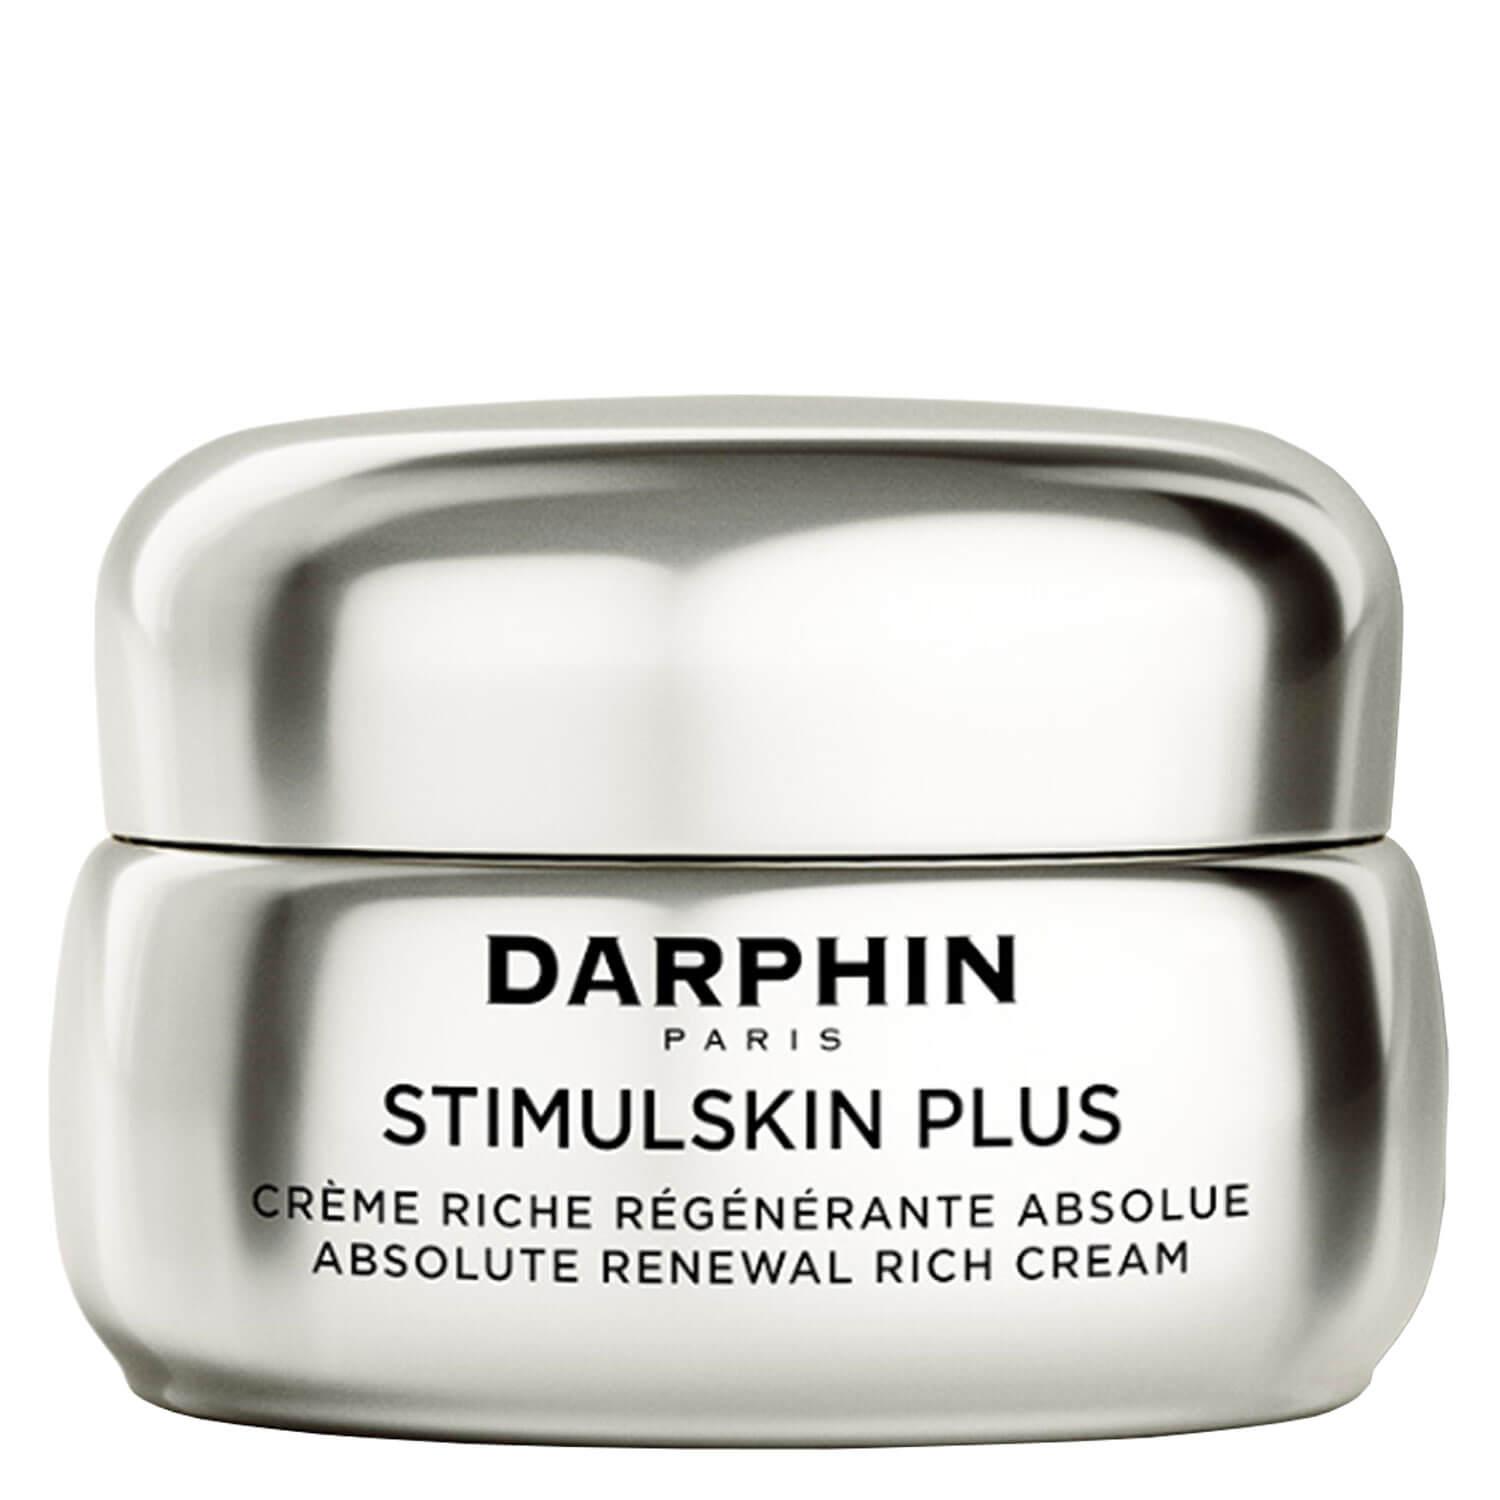 STIMULSKIN PLUS - Absolute Renewal Rich Cream